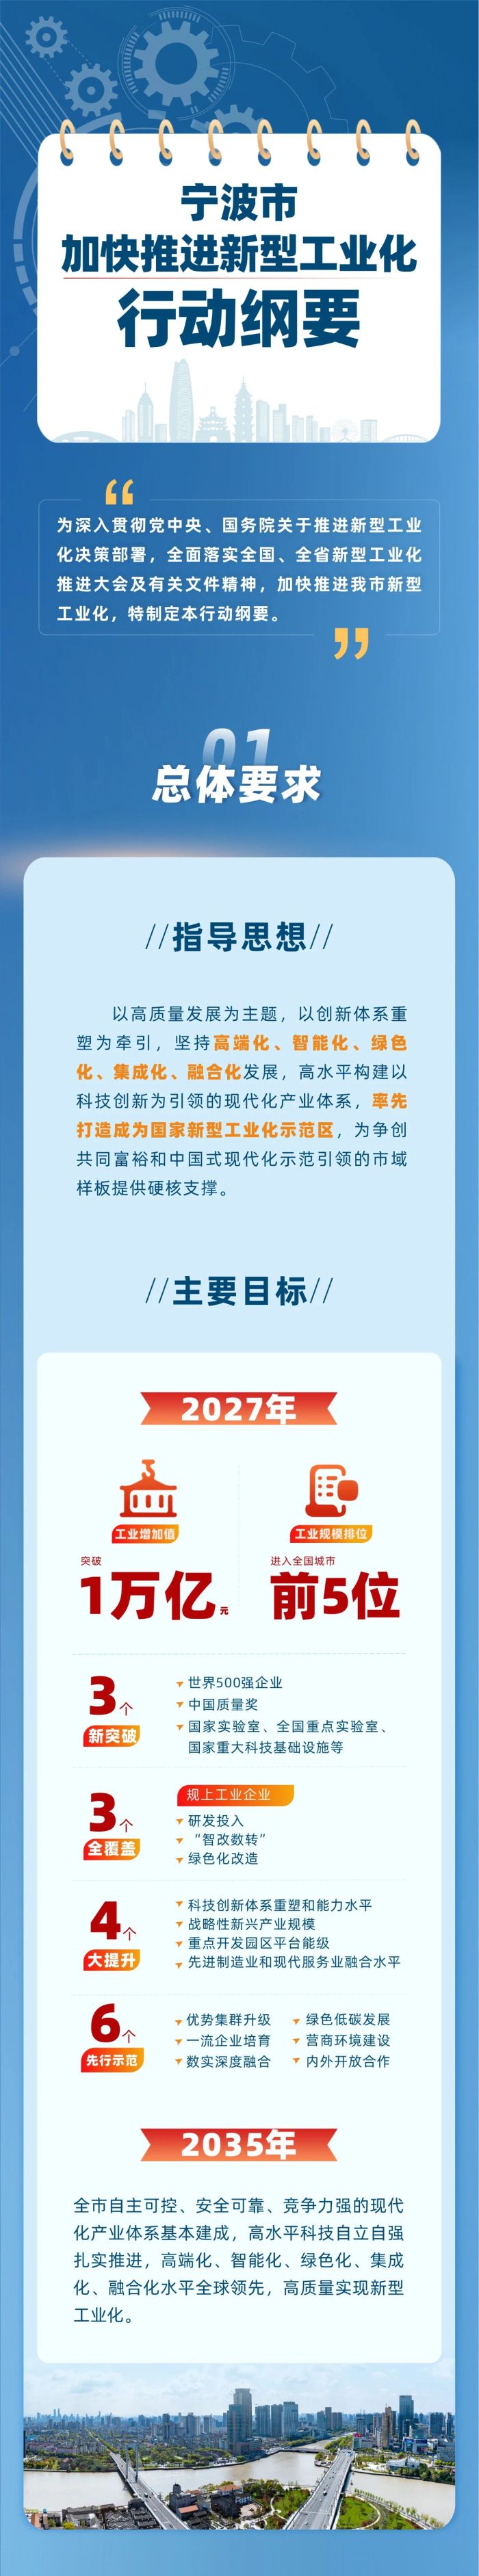 计划到2027年，宁波工业规模目标进入全国前5